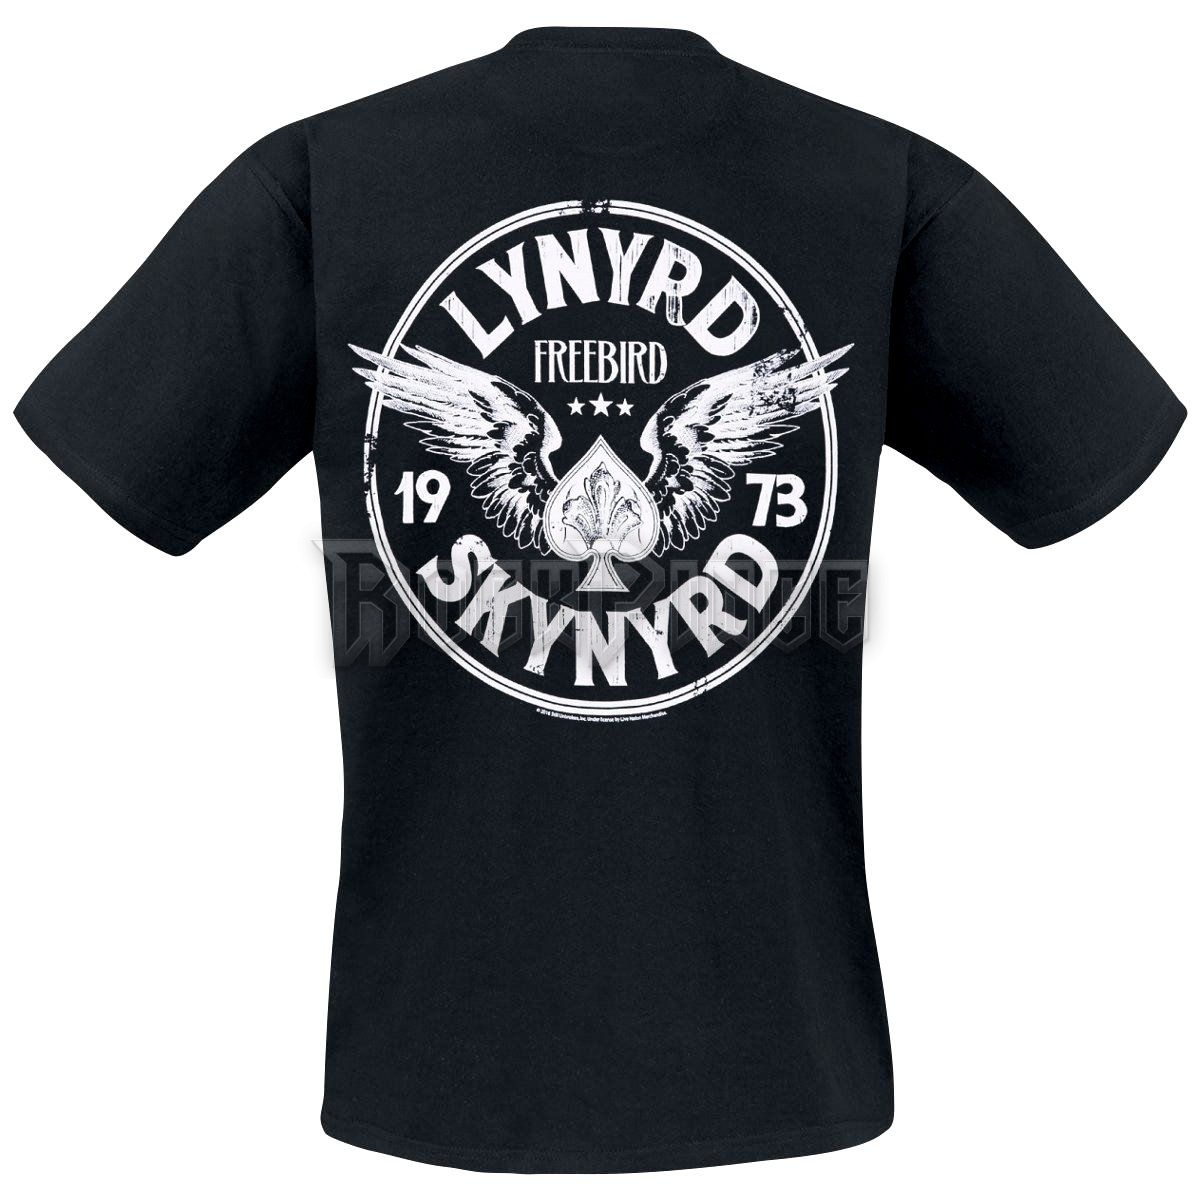 Lynyrd Skynyrd - Freebird 73 - UNISEX PÓLÓ - LYSKY100043TS